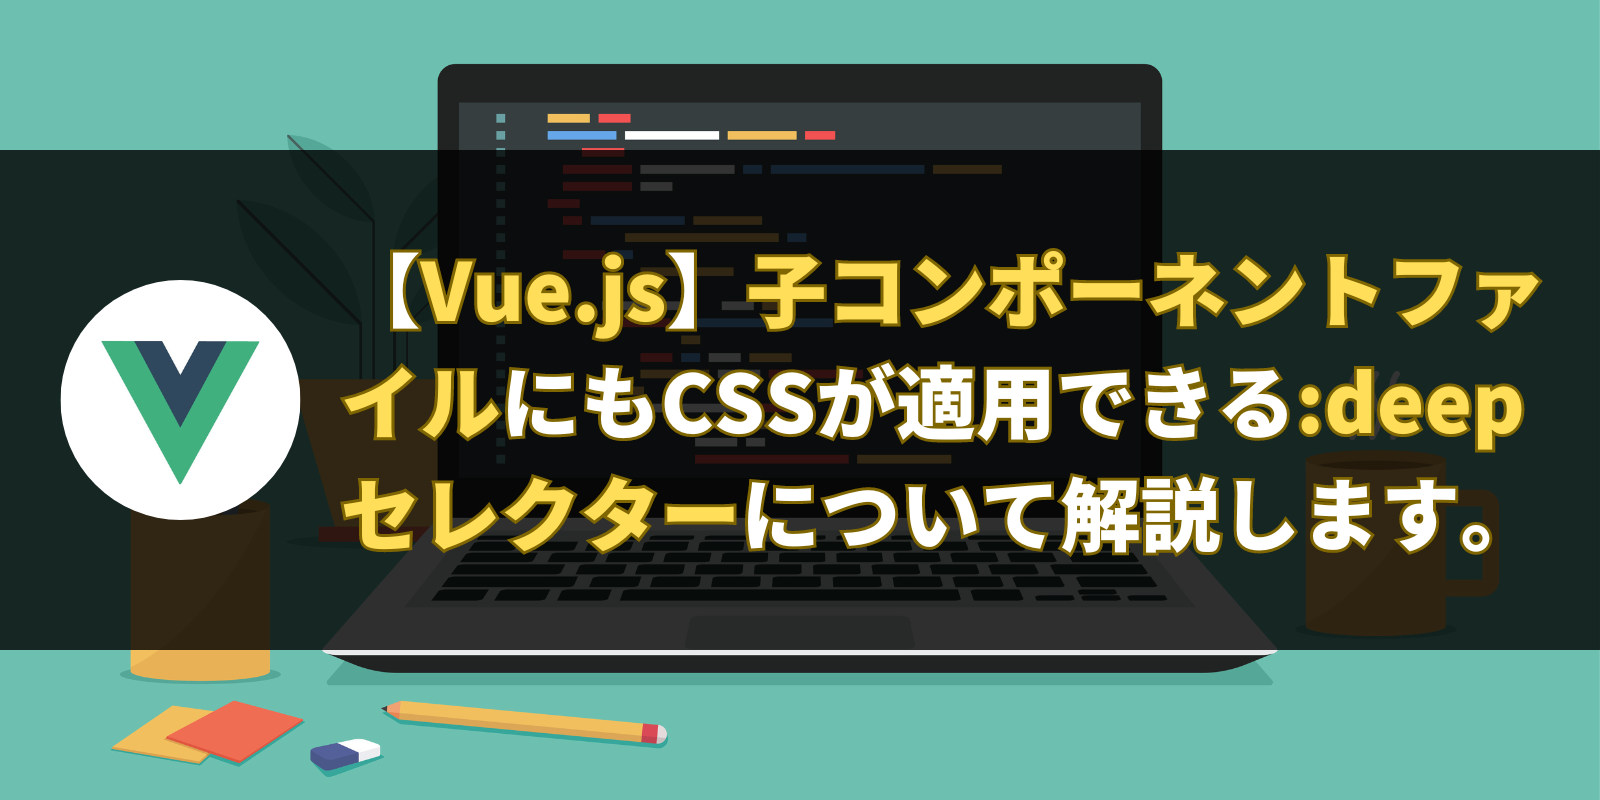 【Vue.js】子コンポーネントファイルにもCSSが適用できる:deepセレクターについて解説します。